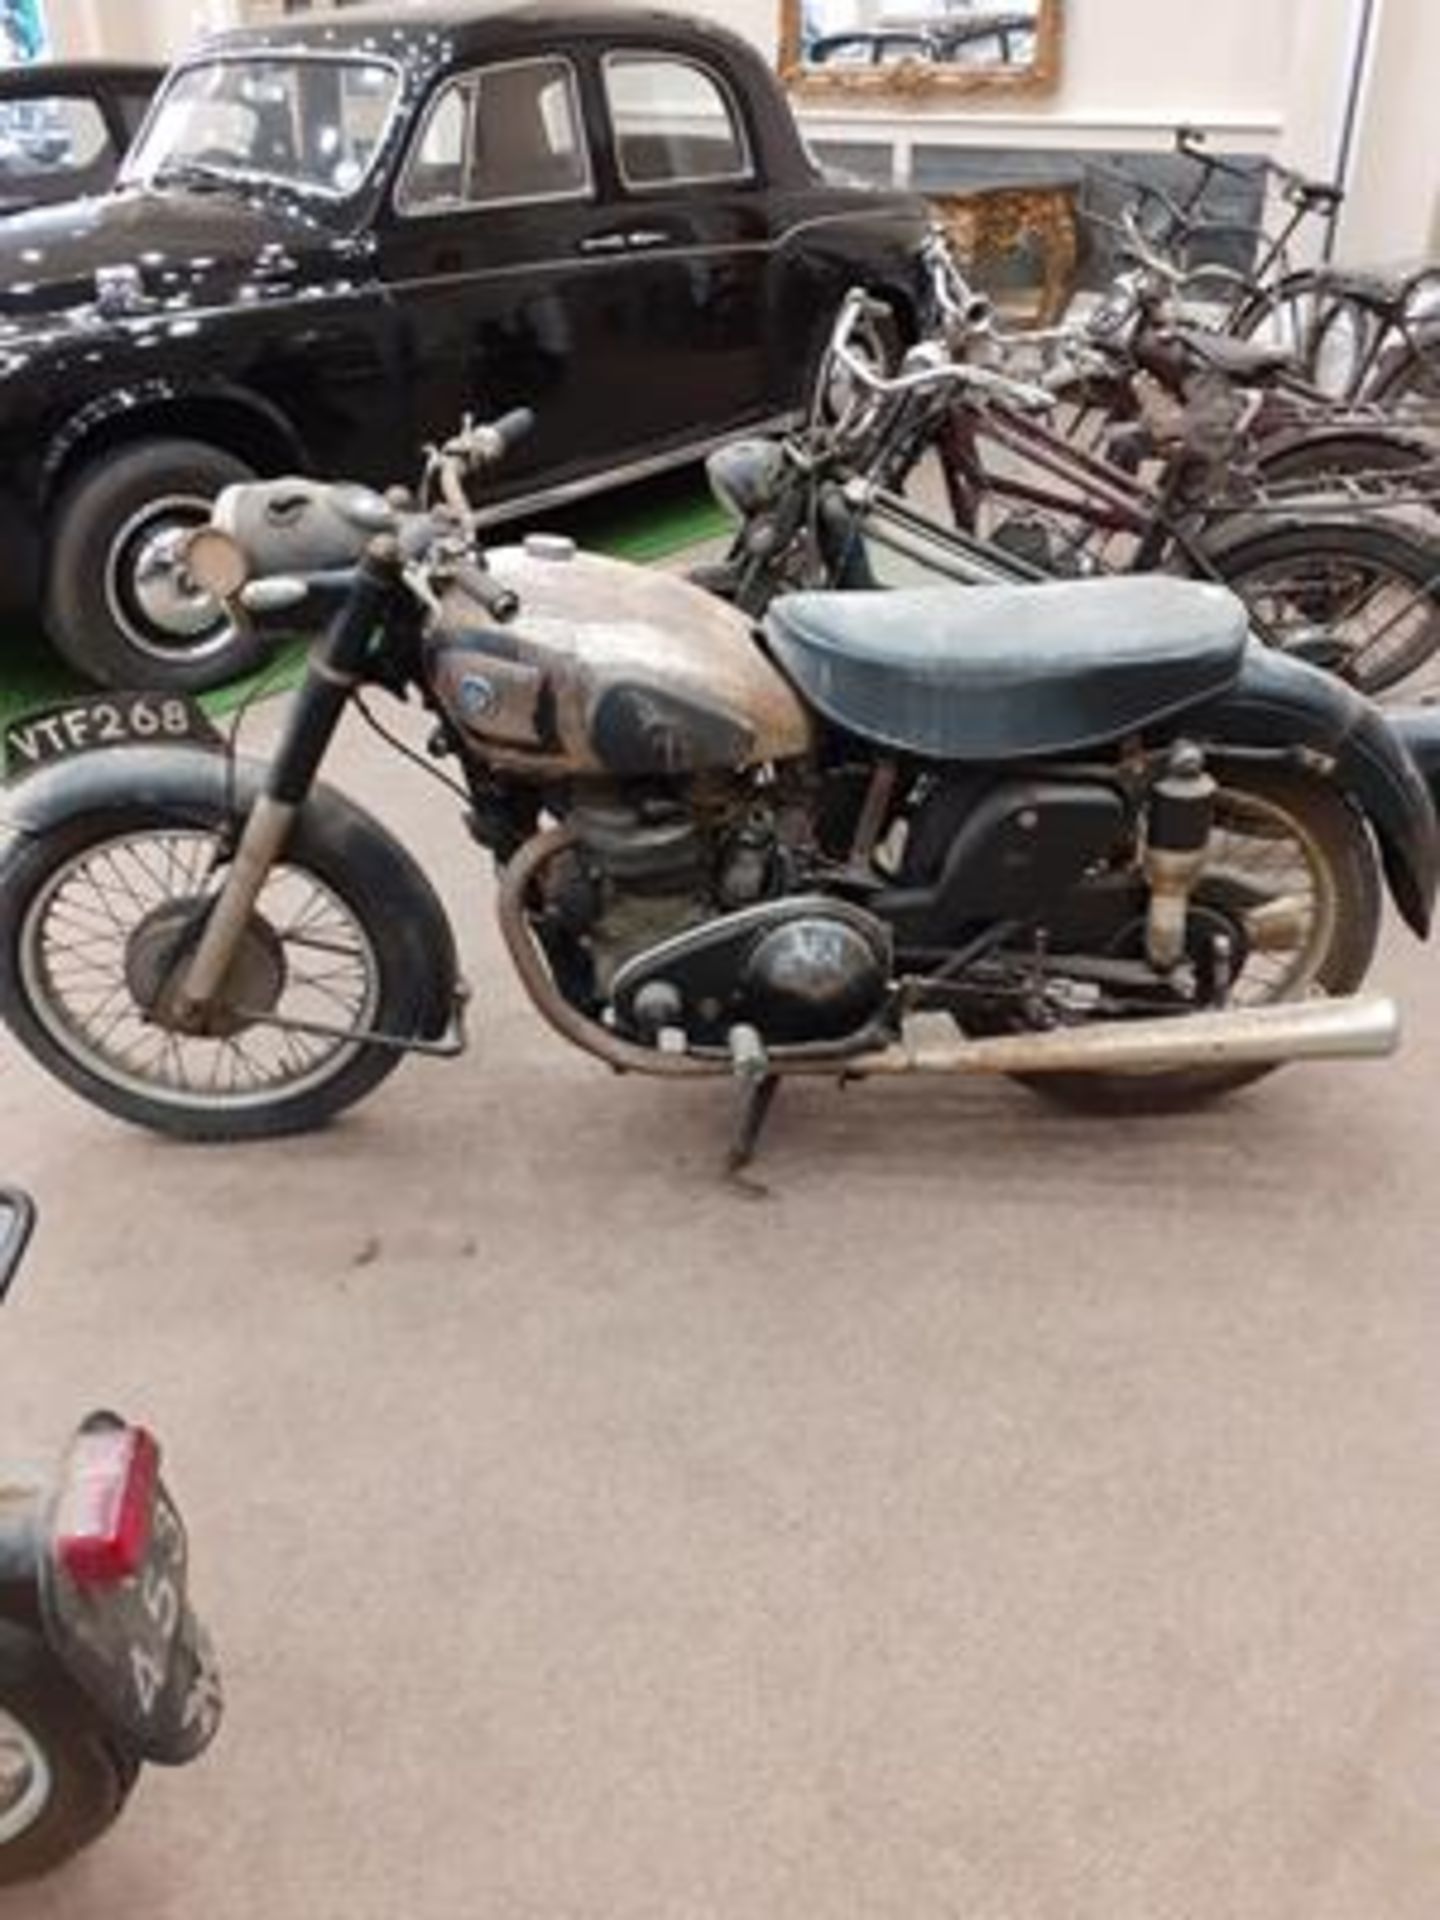 ~ 1955 AJS M20 Motorcycle Registration number: VTF 268 Date of first registration: N/A Frame number: - Image 2 of 6